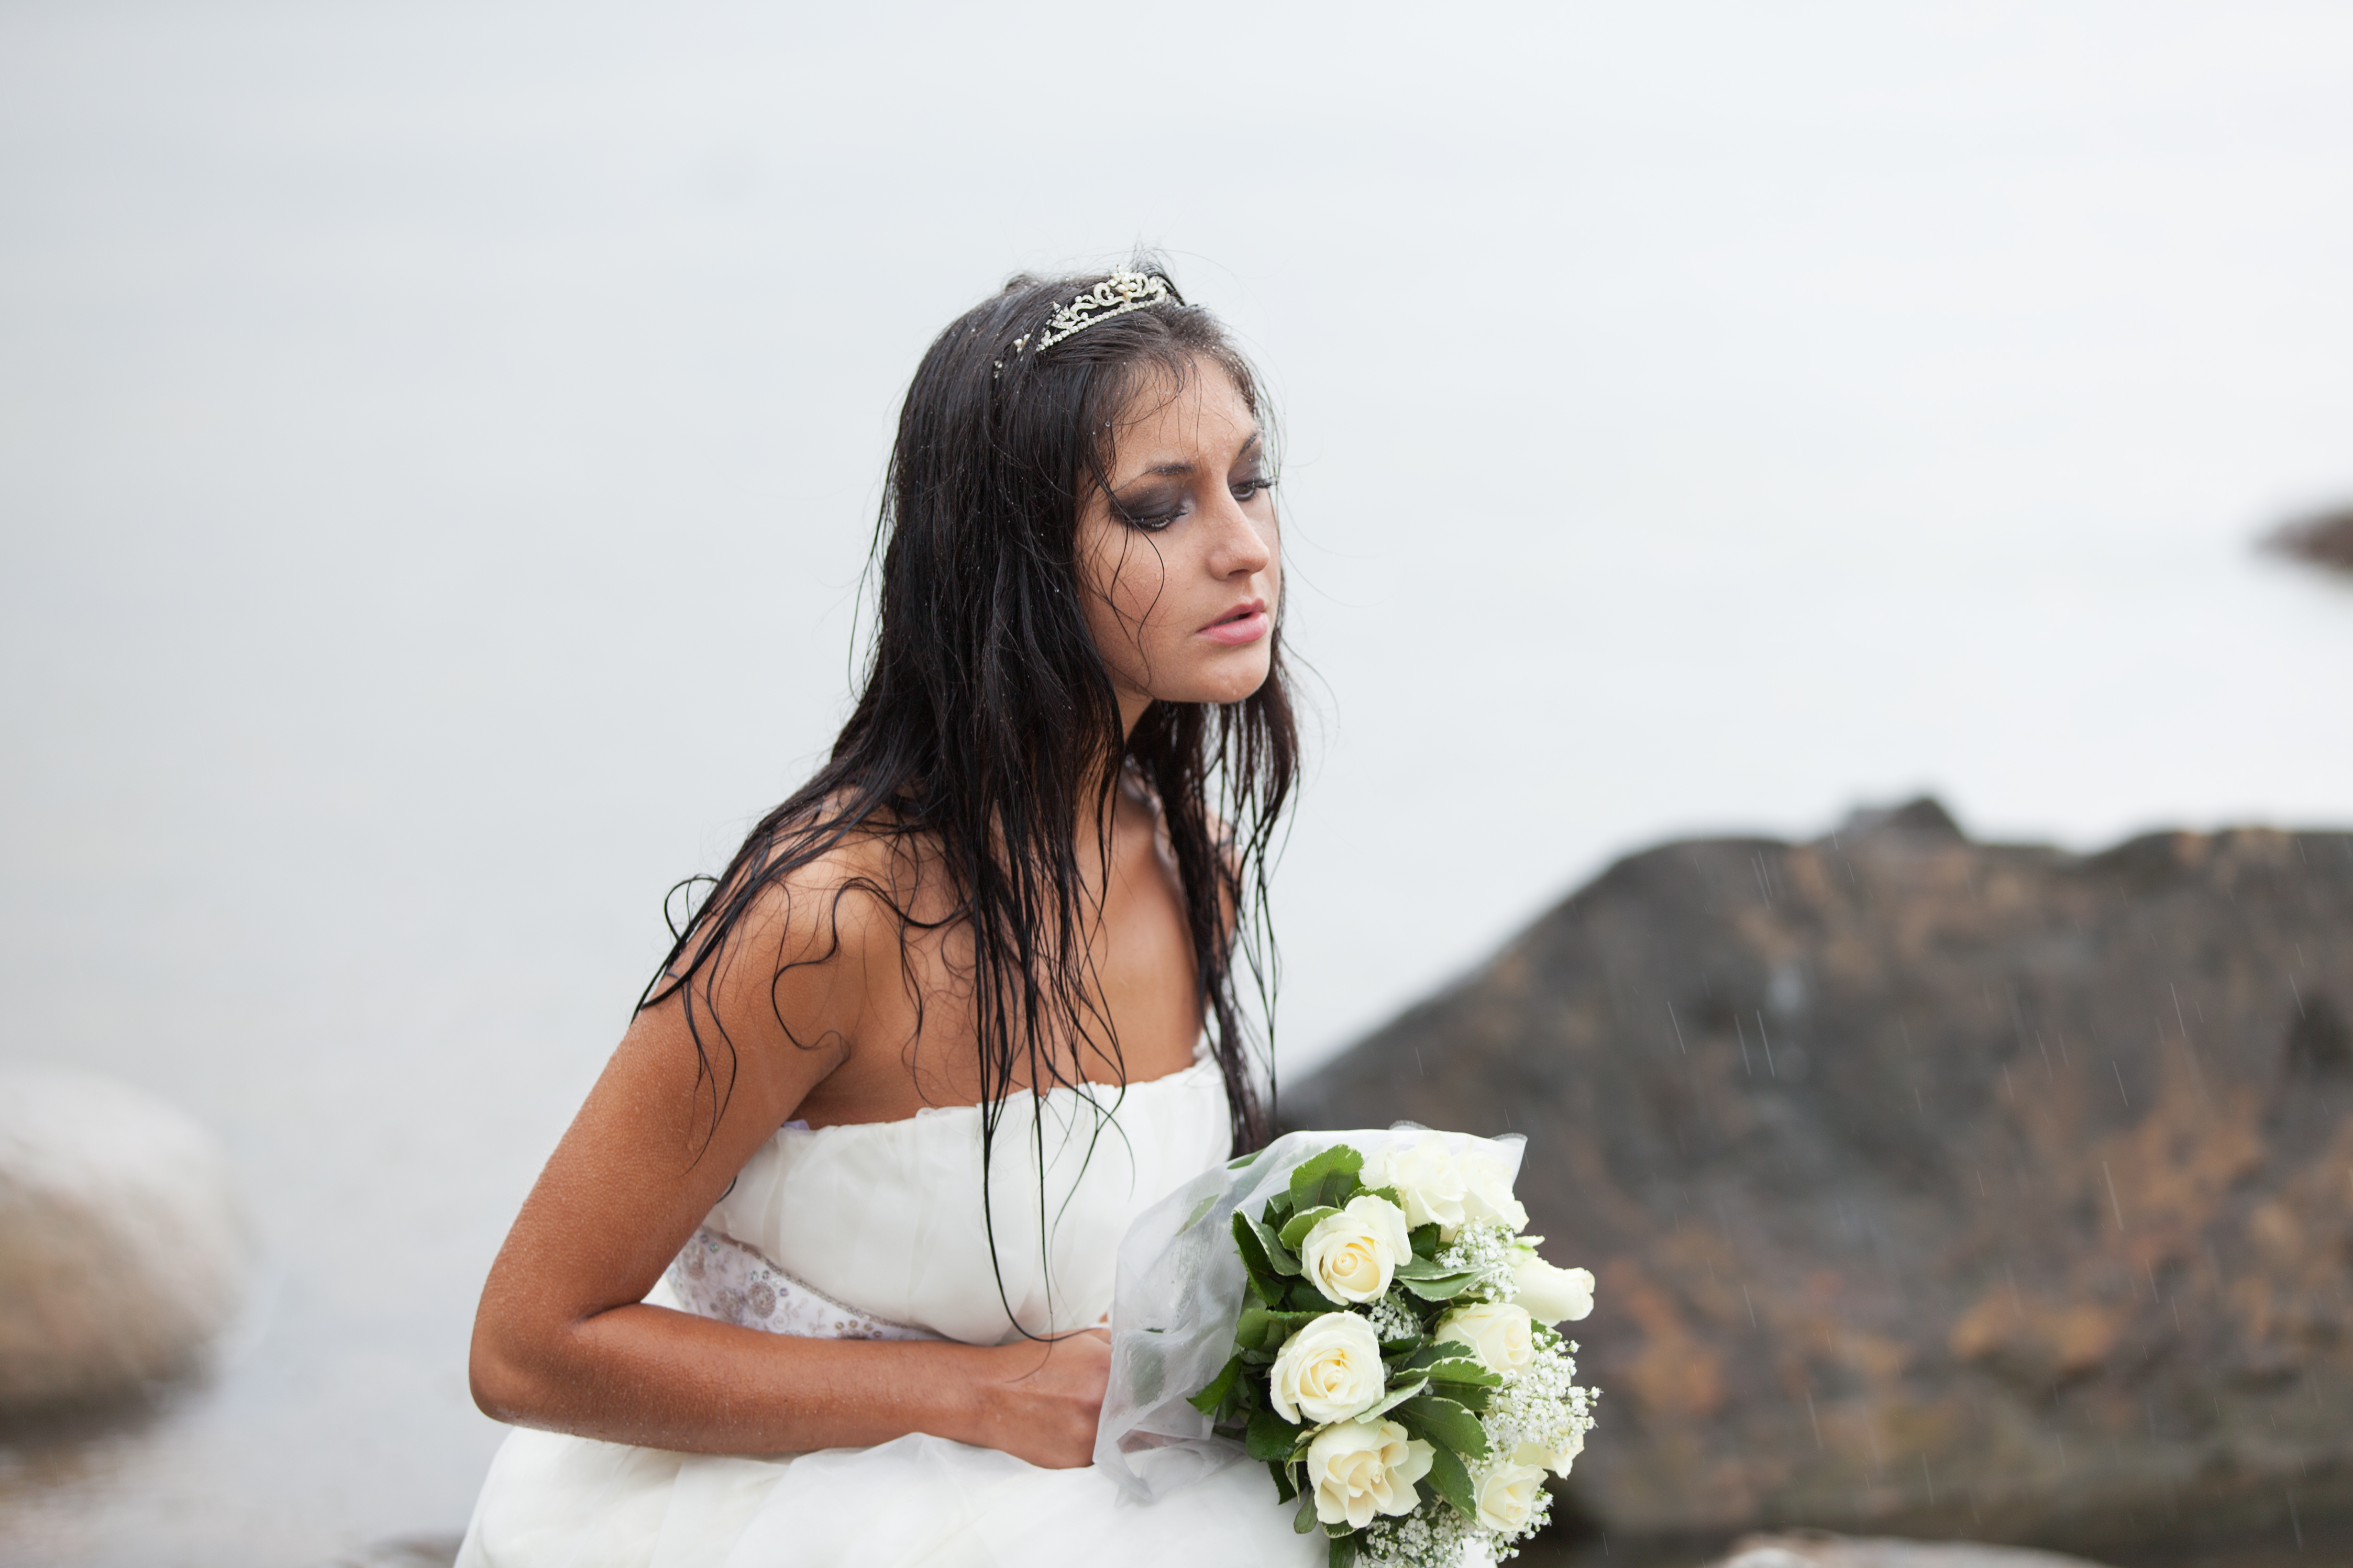 An upset bride carrying her bouquet | Source: Shutterstock